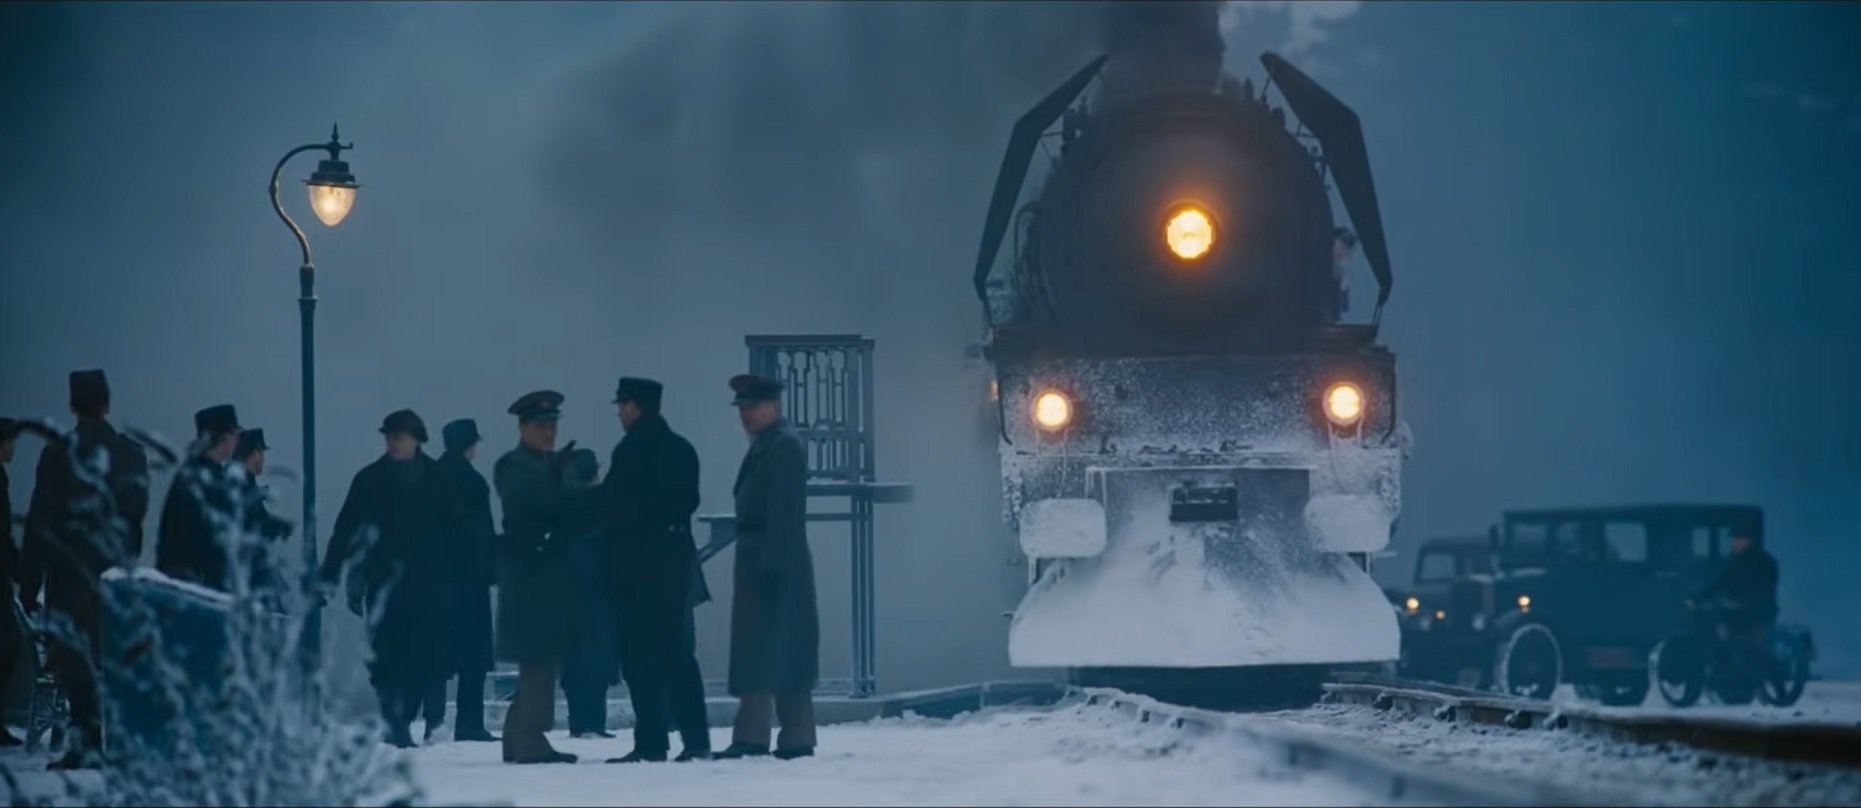 O outro filme da série em que Poirot participa é Assassinato no Expresso Oriente. Lançado em 2017 ( o livro é de 1934), o suspense Dirigido se passa a bordo de um luxuoso trem que viaja de Istambul para Calais durante o inverno dos anos 30.